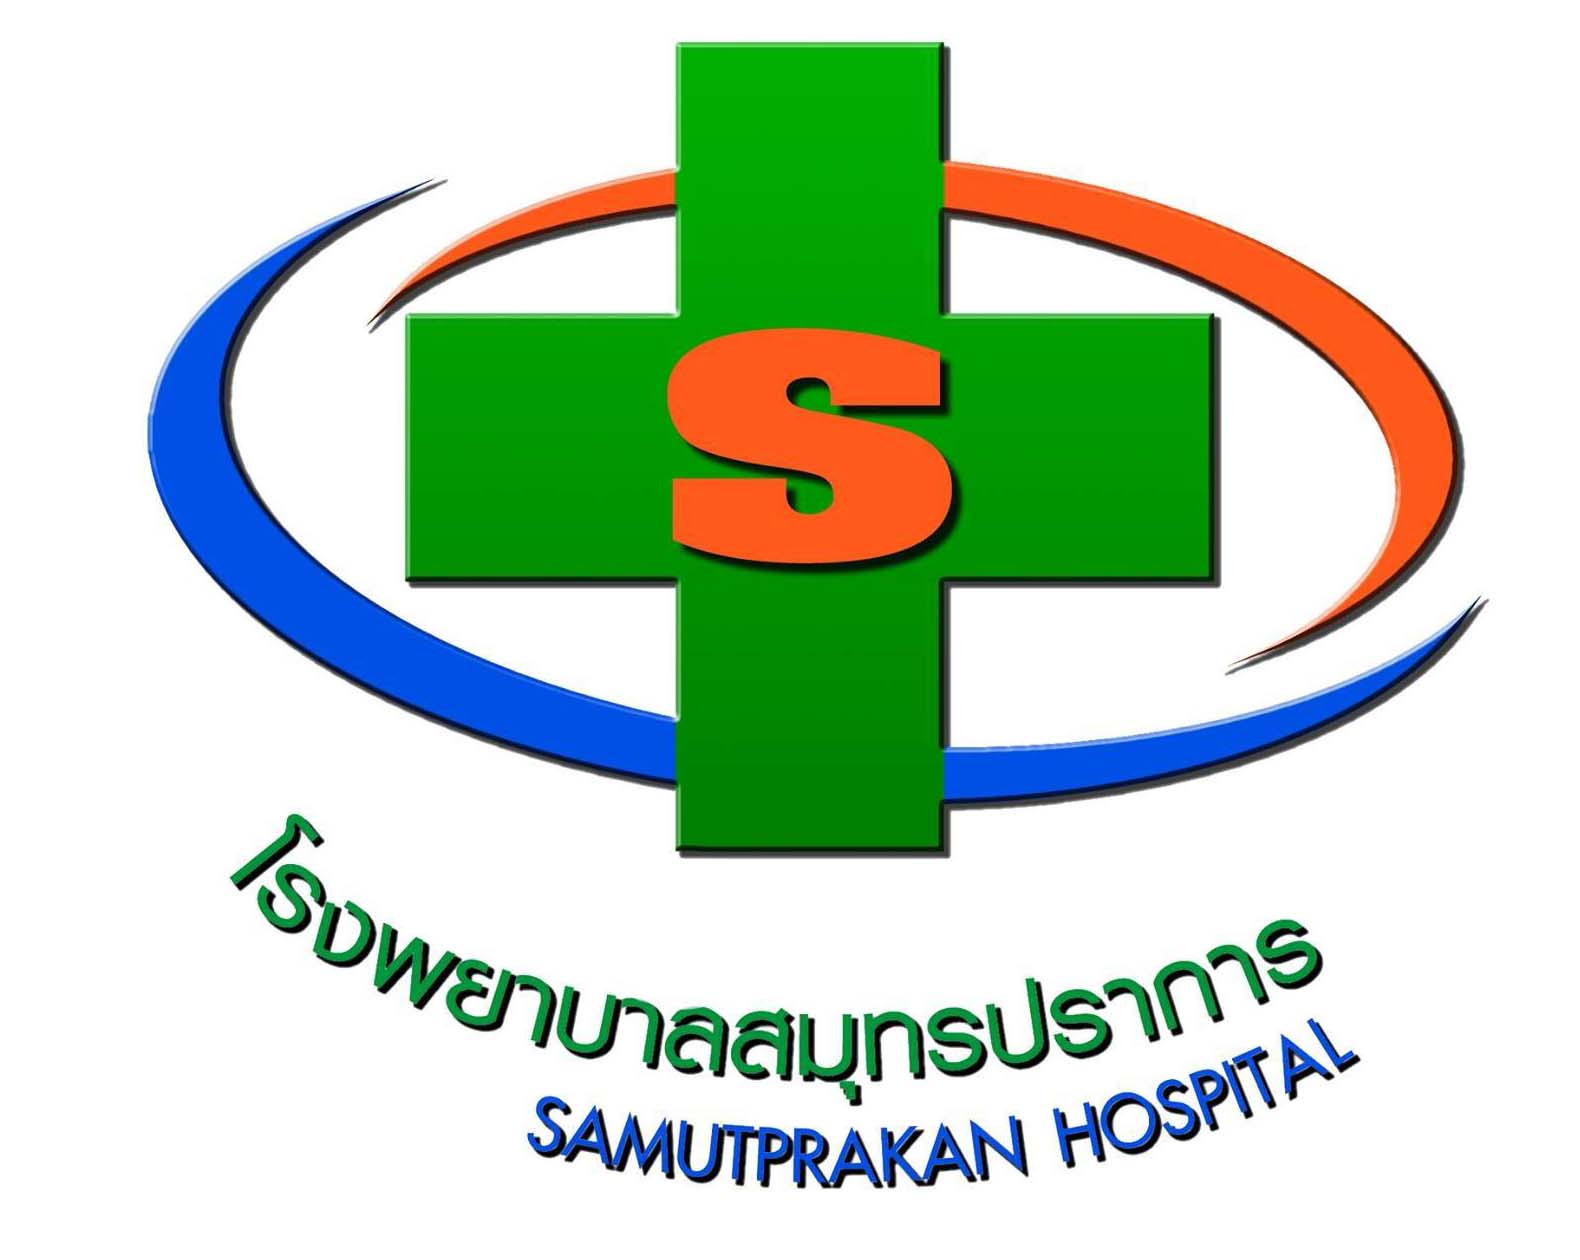 Samutprakarn Hospital - 1